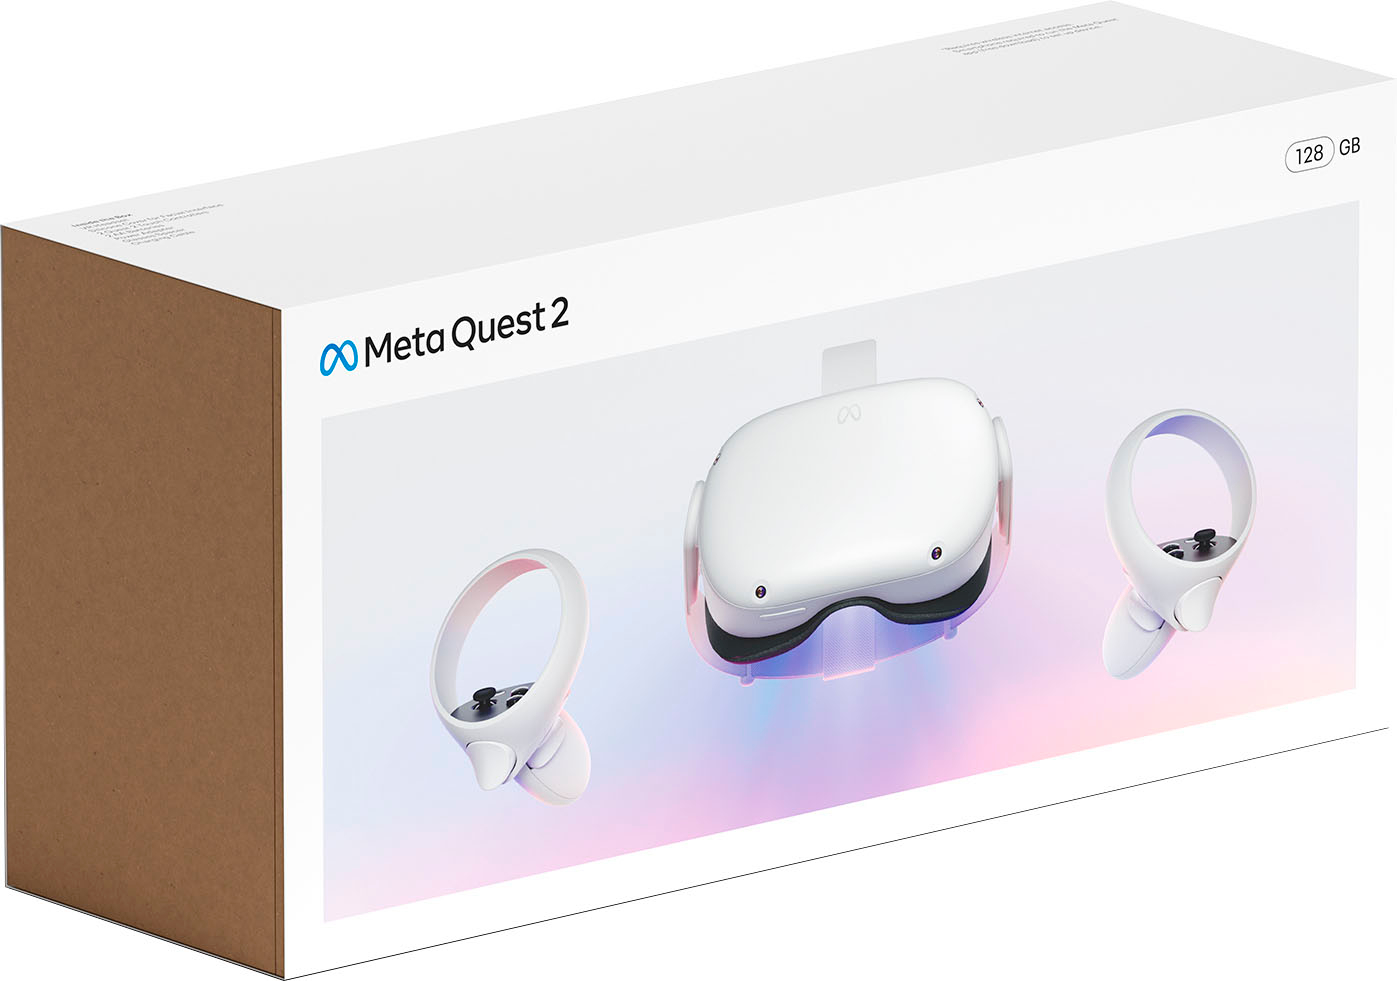 在庫限定 Oculus quest 2 256G 美品 イヤフォン